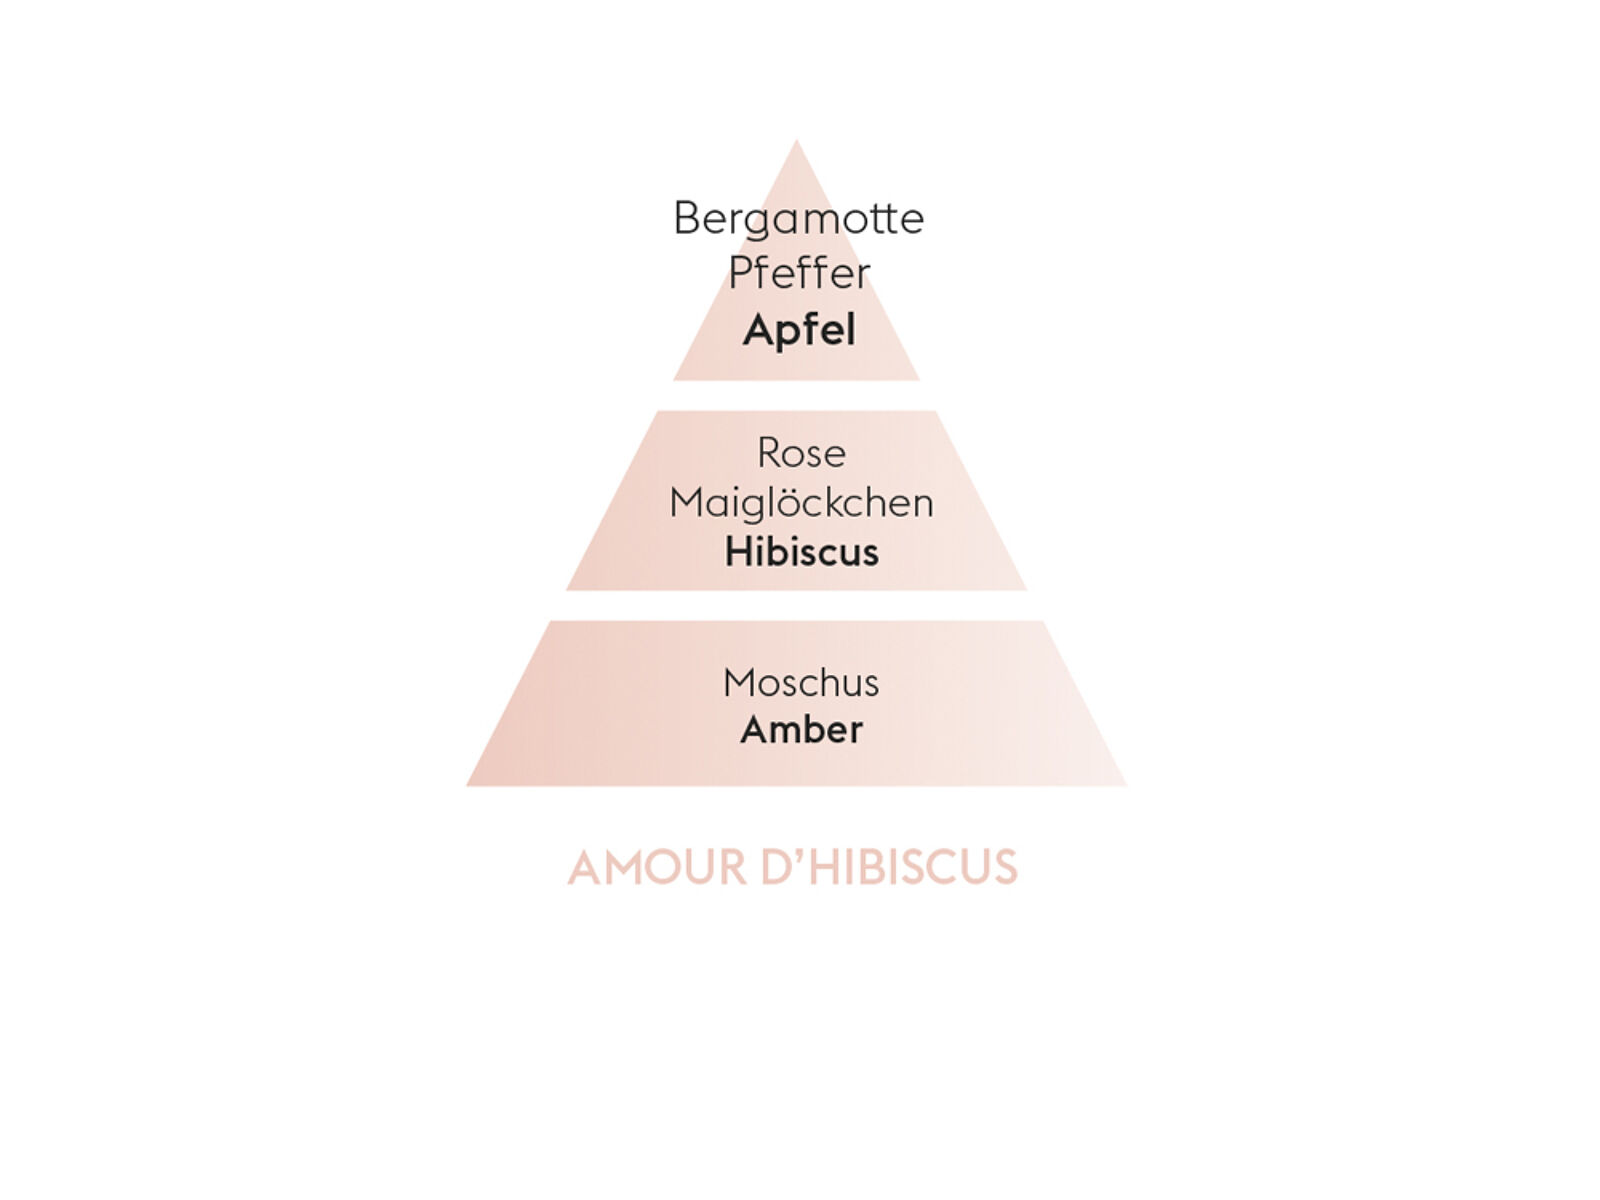 Eindrucksvoller Hibiskus |Amour d'Hibiscus| Düfte von Maison Berger Paris